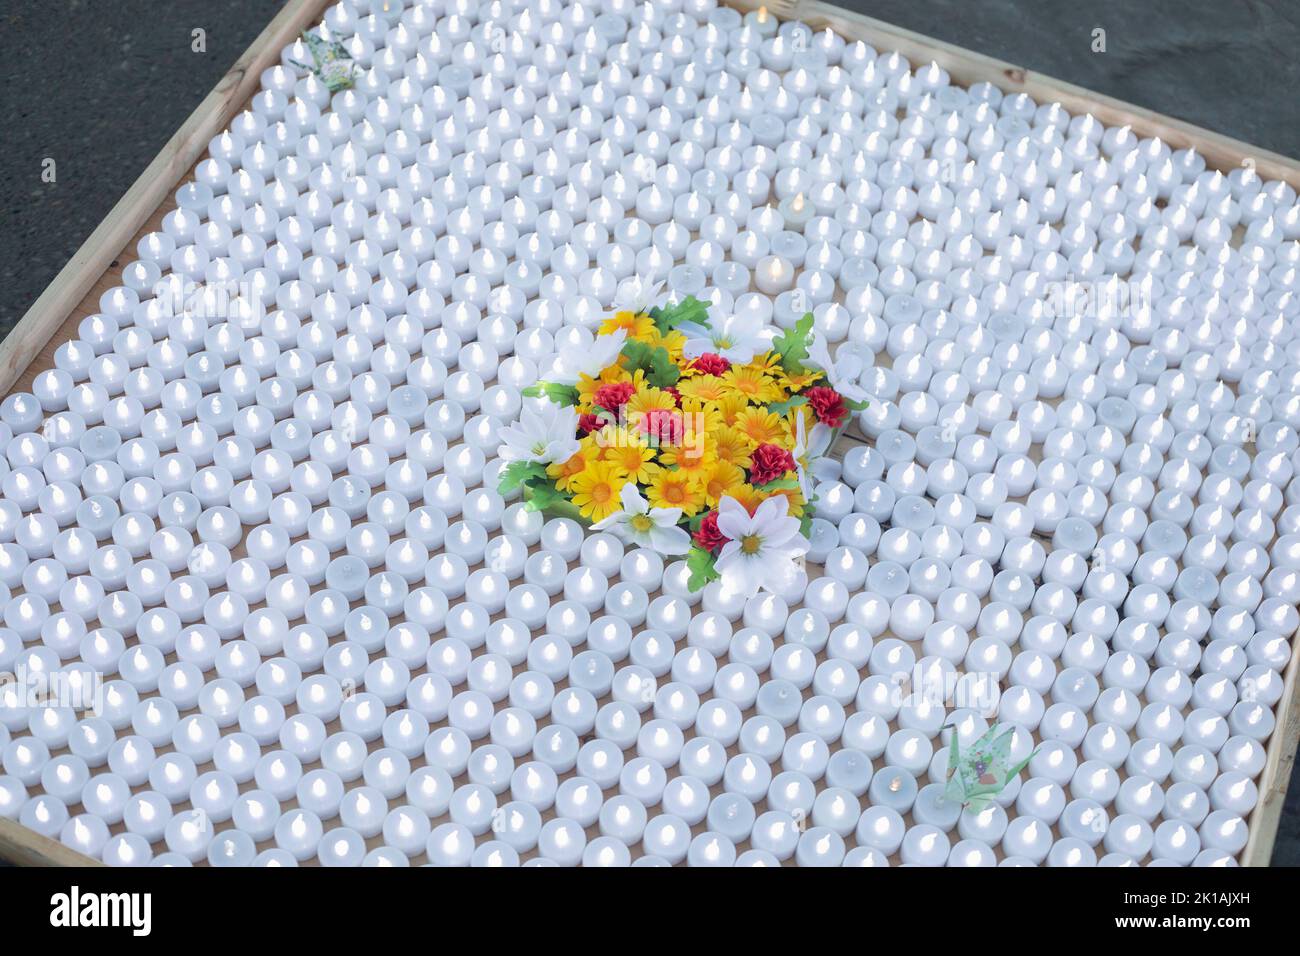 Una piattaforma con molte piccole candele bianche illuminate decorate con fiori alla cerimonia della Pace delle Lanterne galleggianti in Olympic Plaza, Calgary, Canada Foto Stock